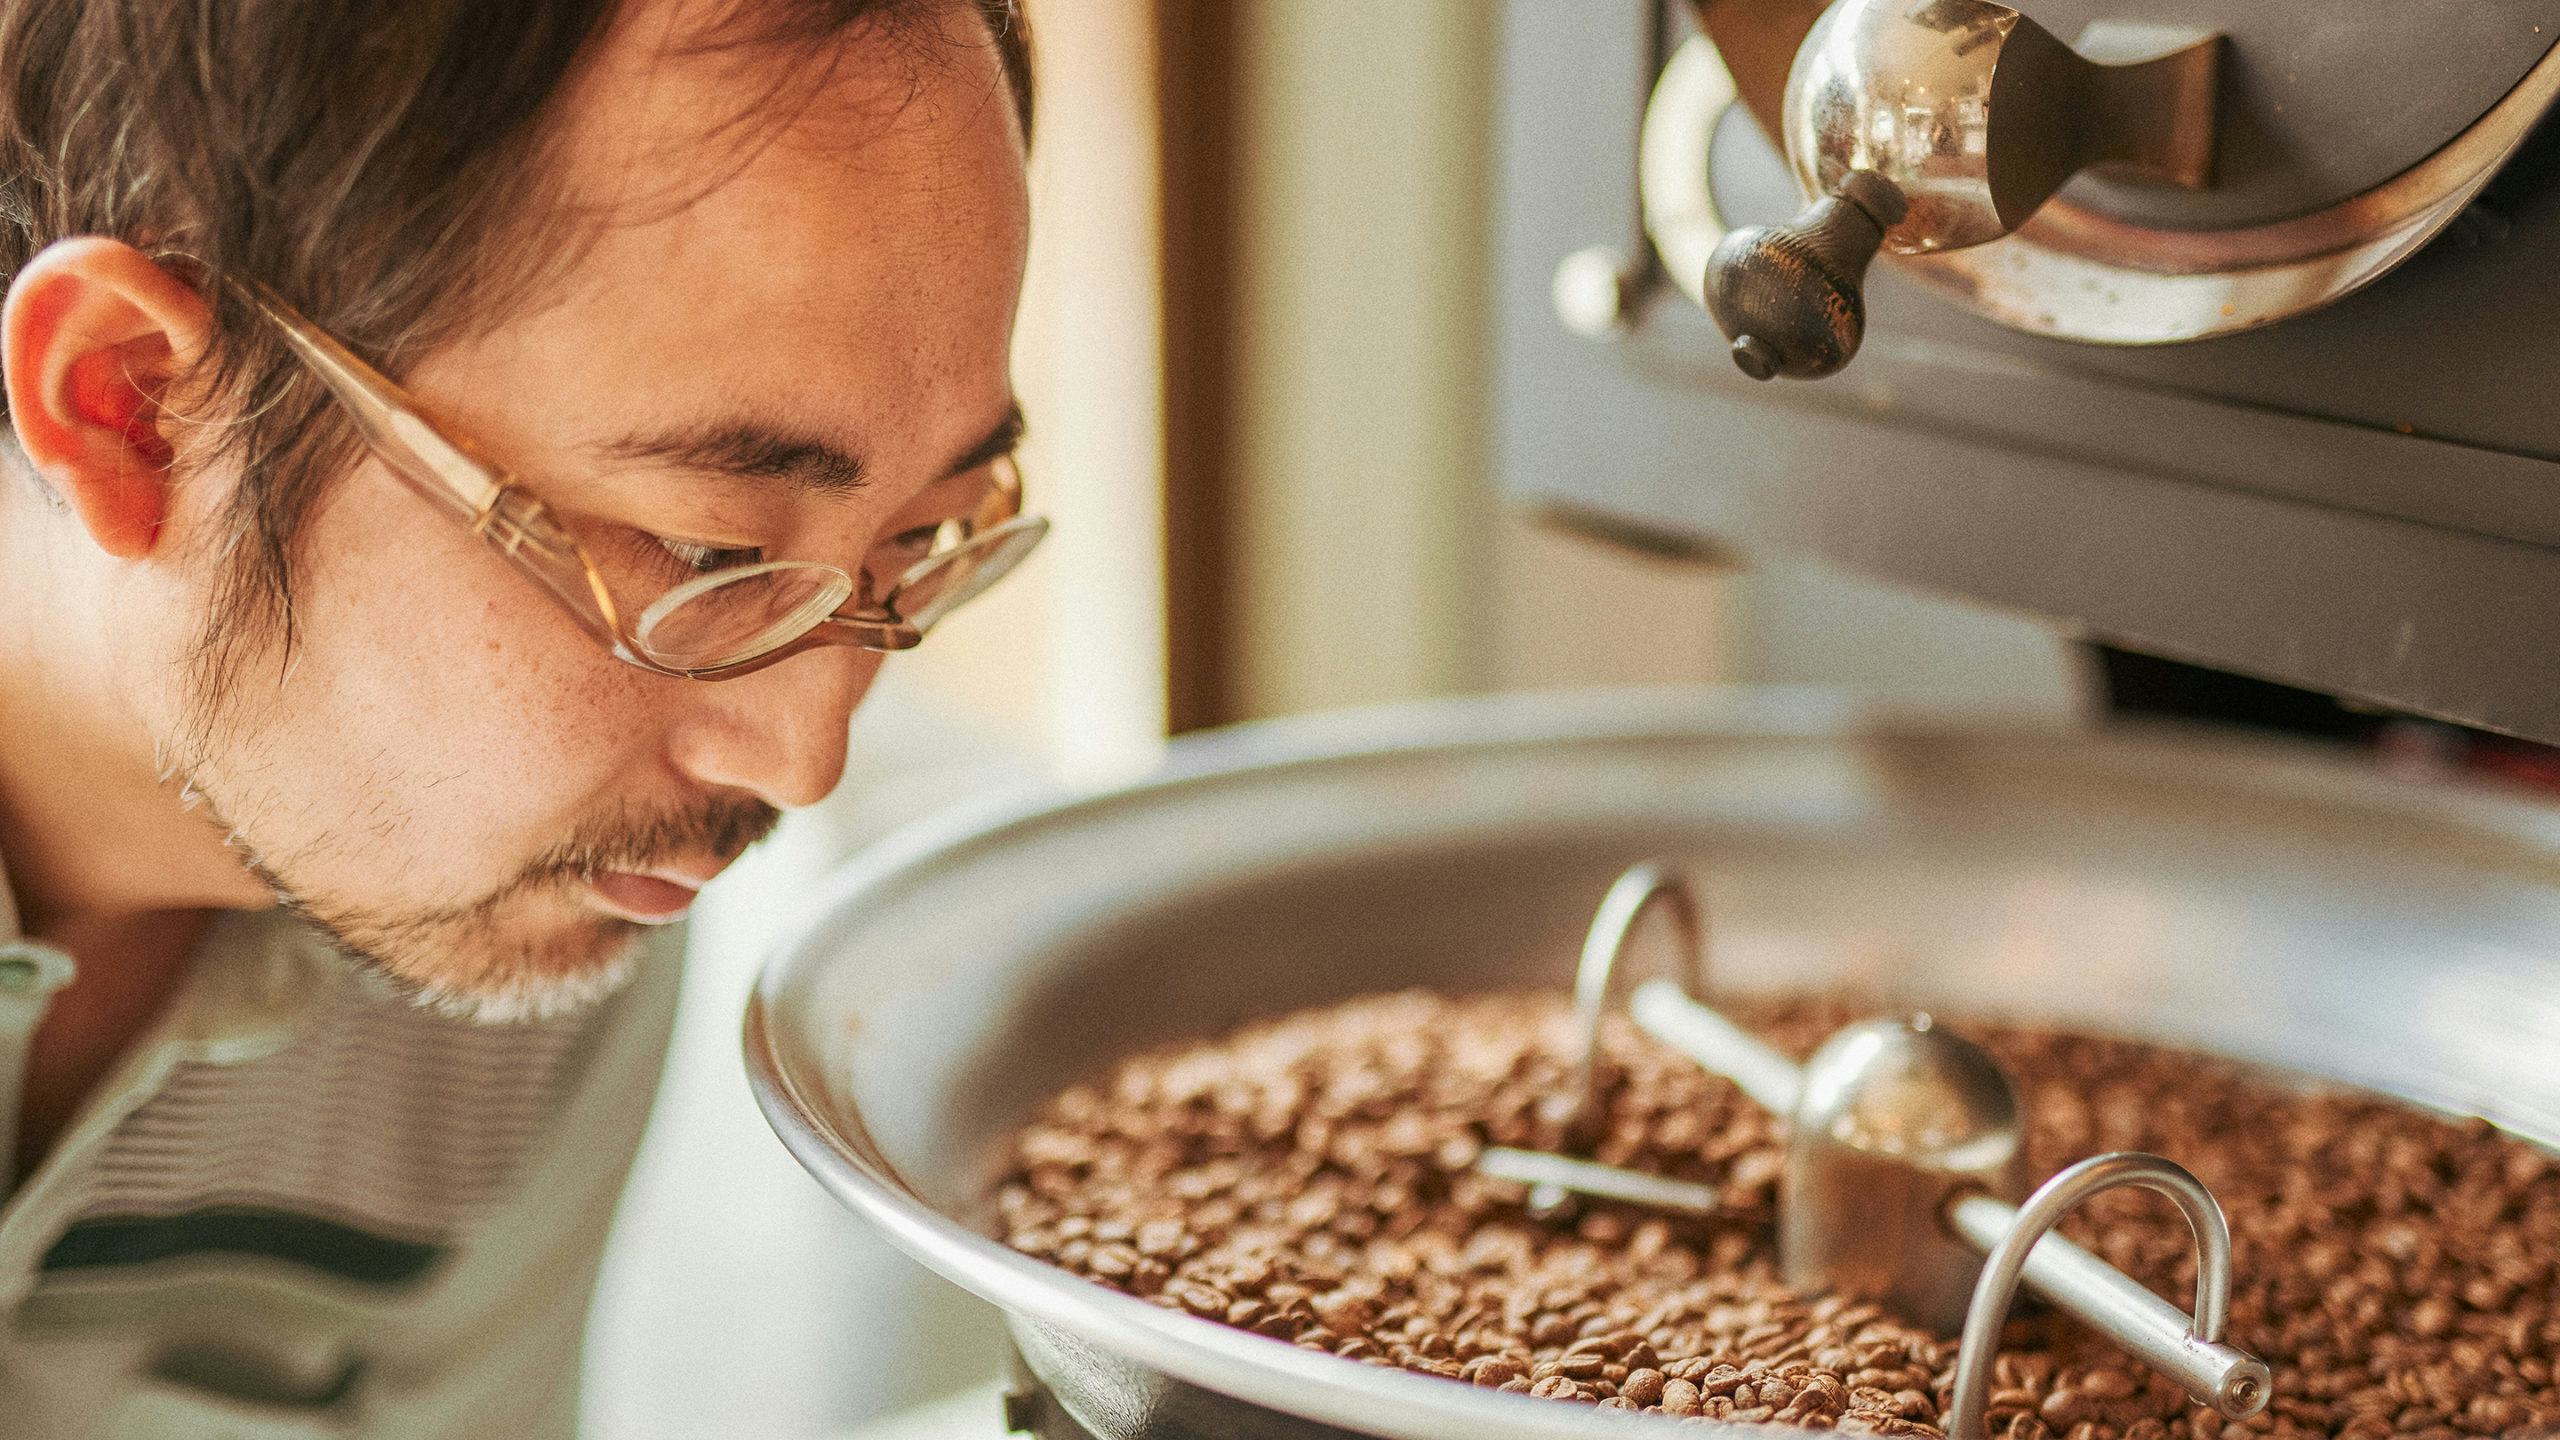 Internationaal platform voor directe handel in koffie nu ook in Nederland